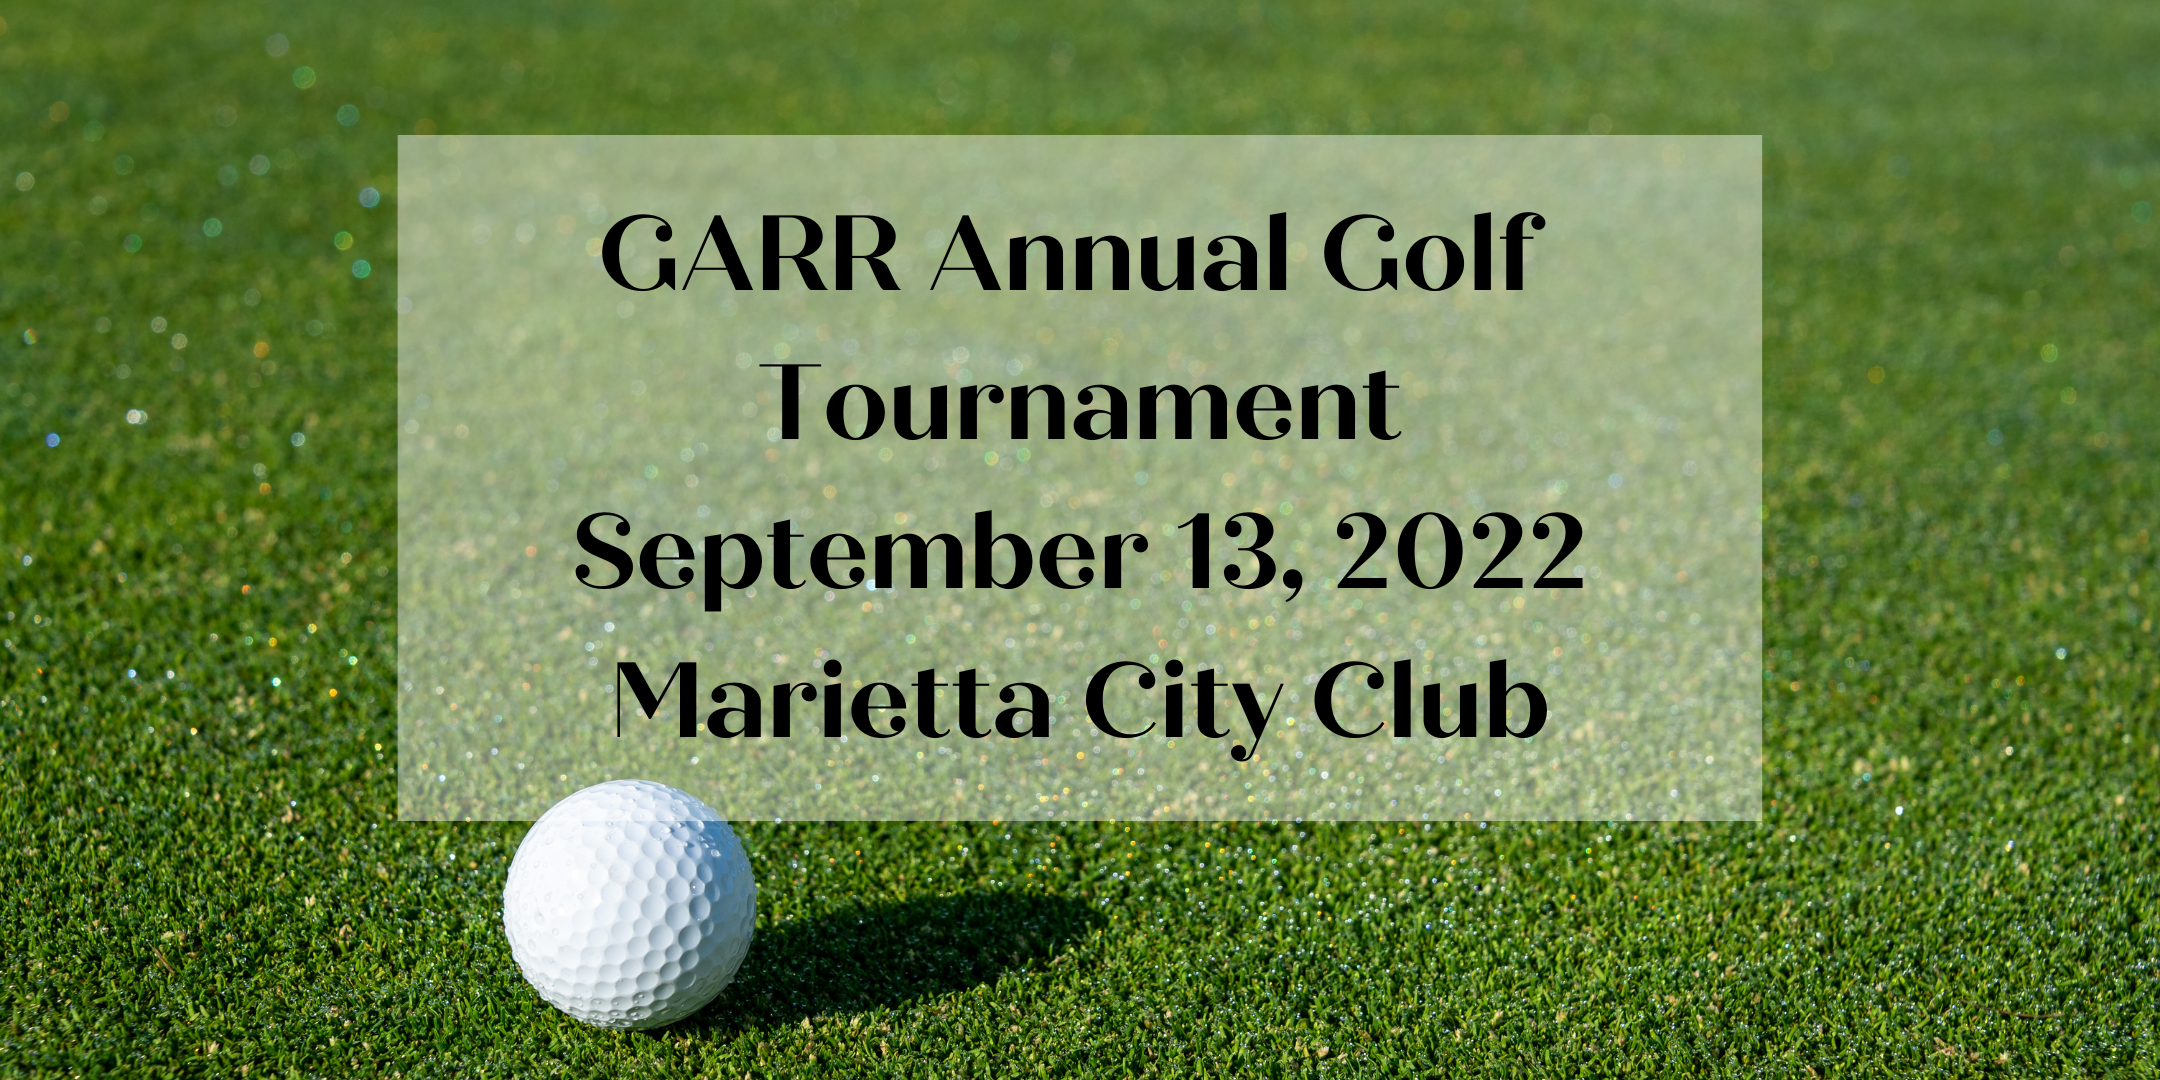 GARR 2022 Charity Golf Tournament